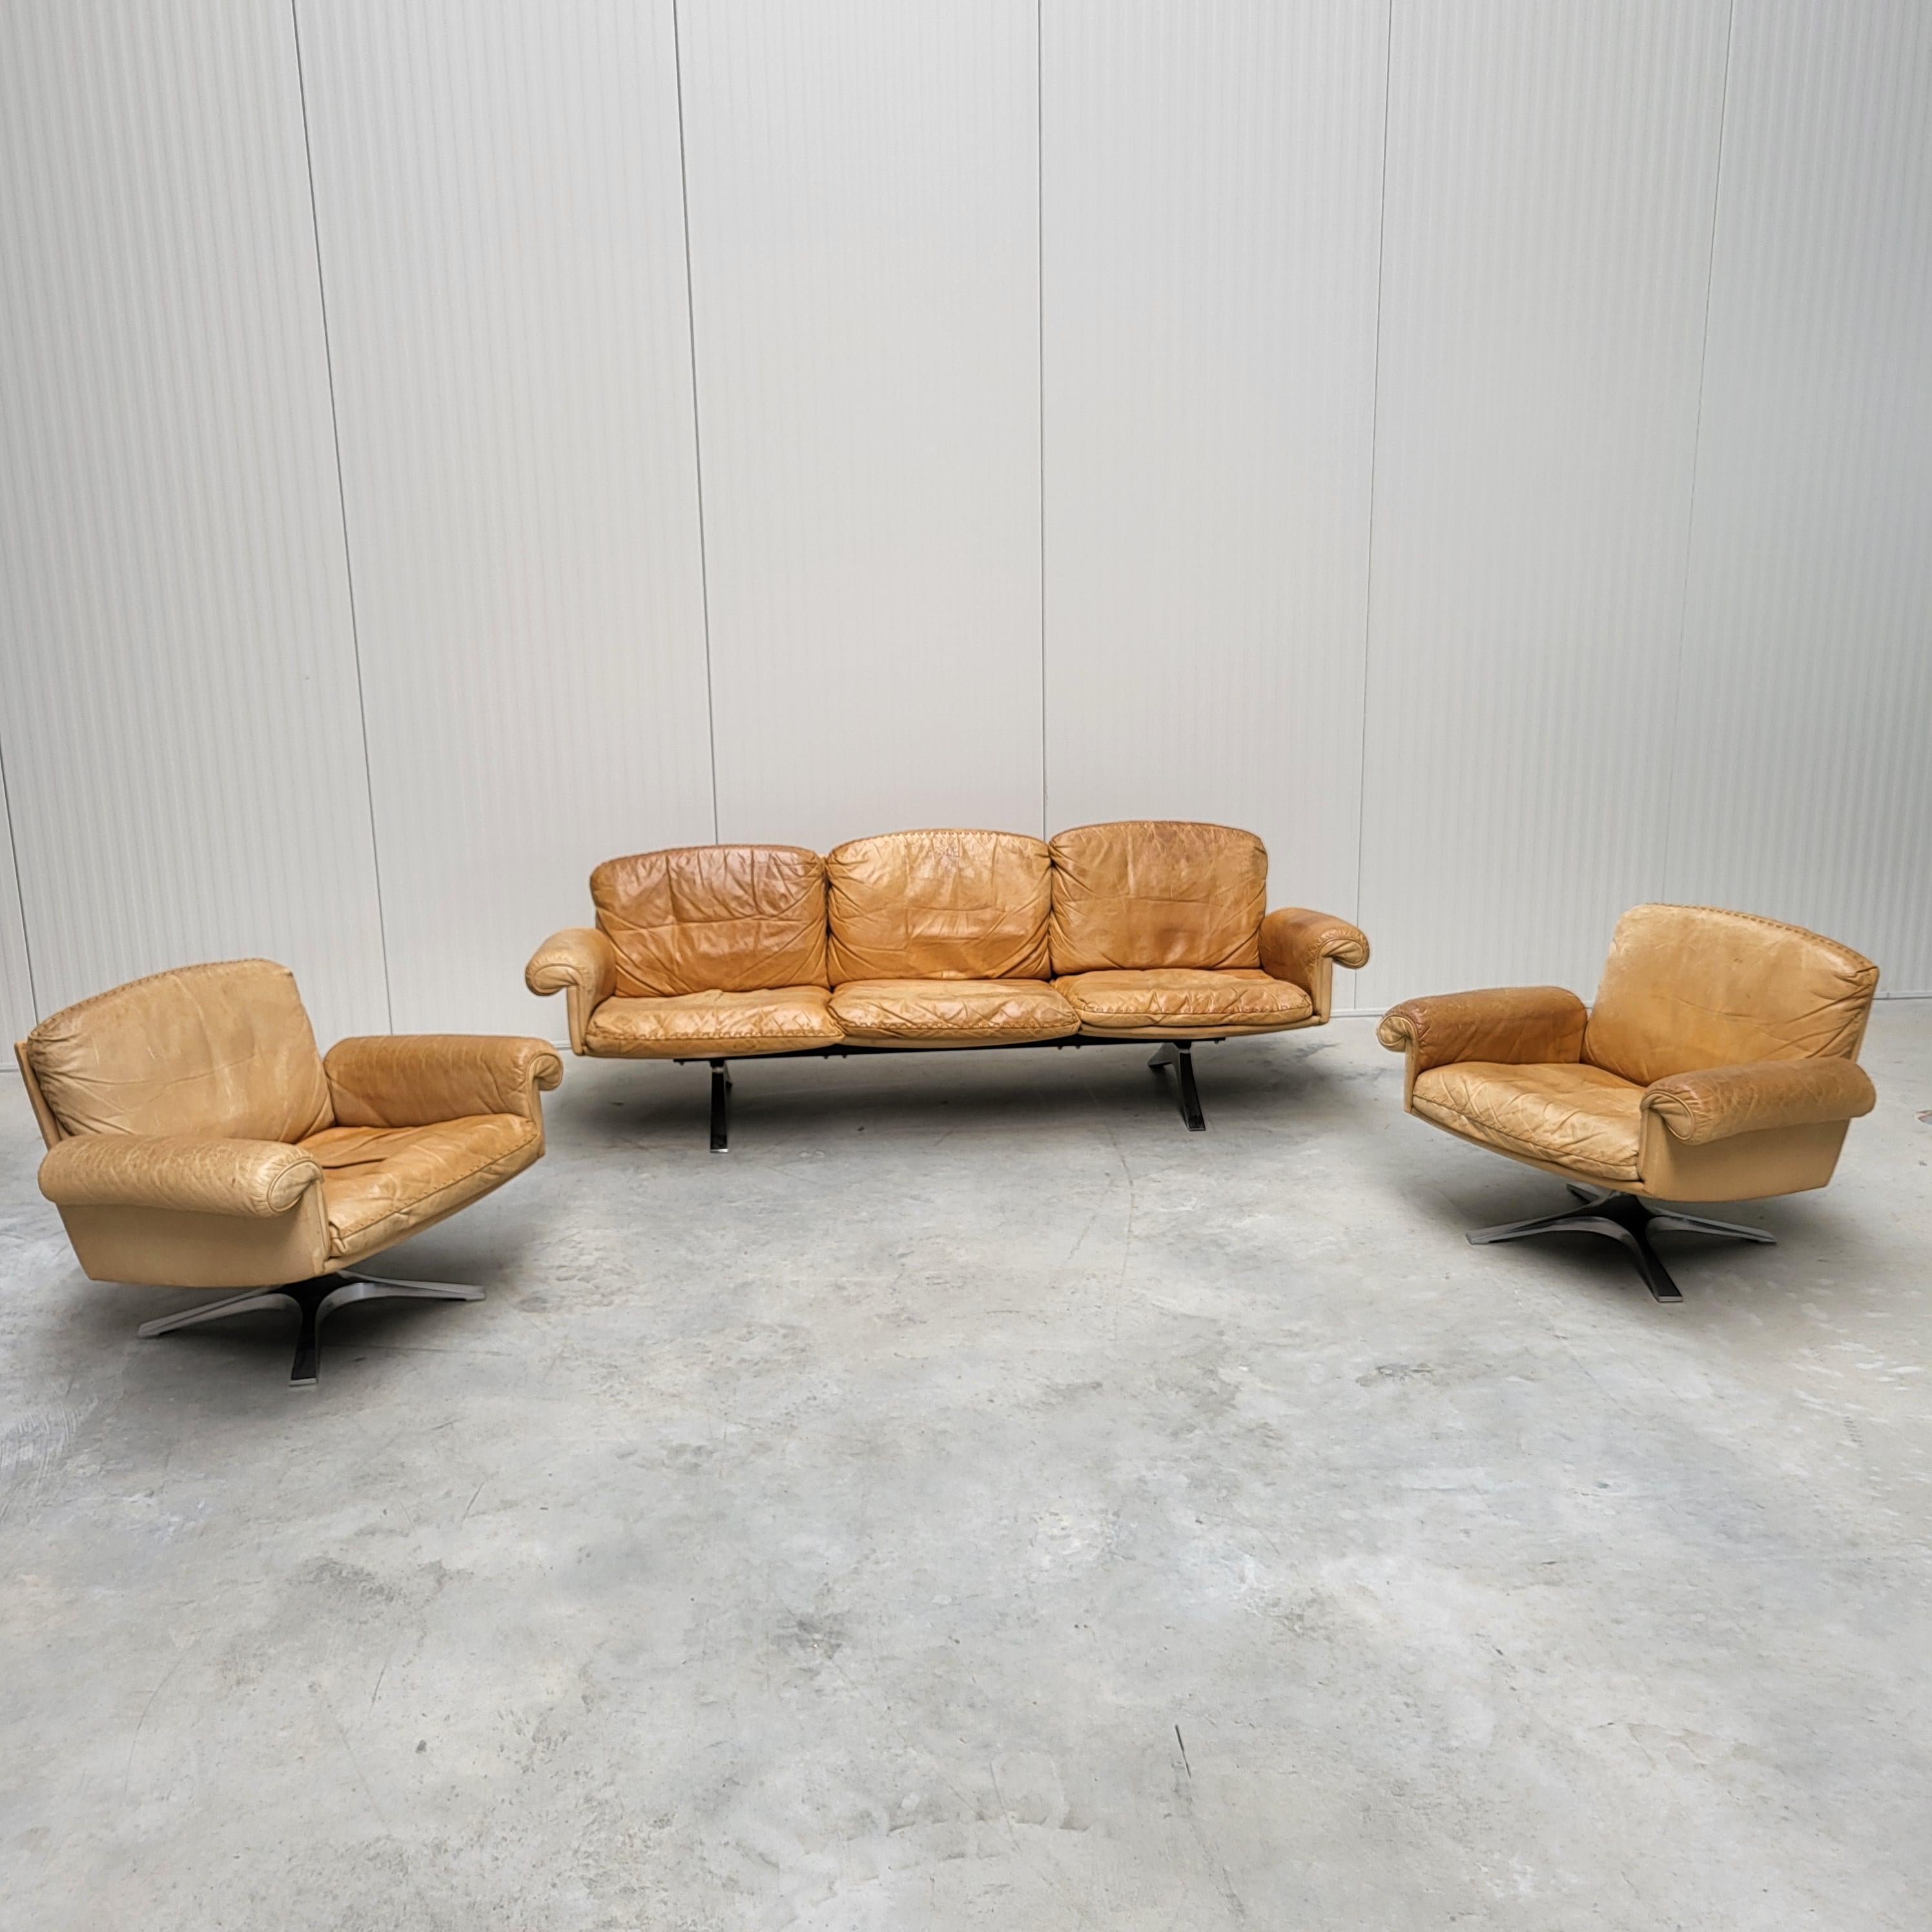 Cet étonnant ensemble de salon composé d'un canapé 3 places et de 2 chaises longues, modèle DS31, a été conçu dans les années 1960 par l'équipe de designers de De Sede et produit par De Sede en Suisse dans les années 1970. 

L'ensemble de salon est